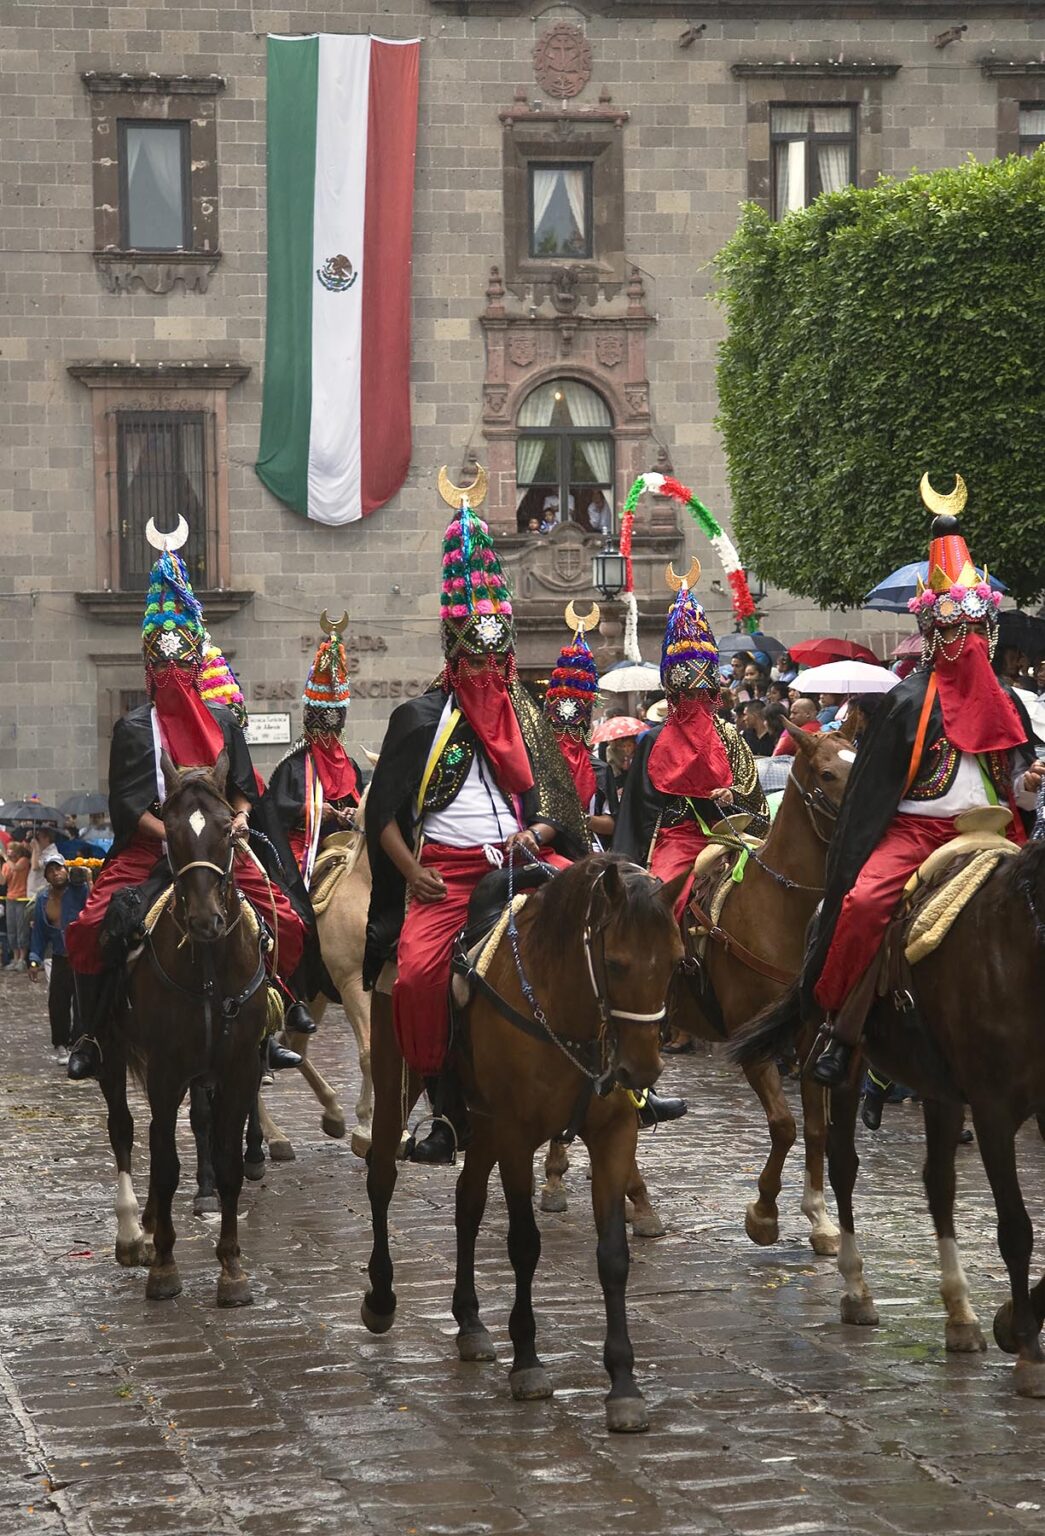 HORSEMEN with elaborate HATS & COSTUMES rides in the FESTIVAL DE SAN MIGUEL ARCHANGEL PARADE - SAN MIGUEL DE ALLENDE, MEXICO